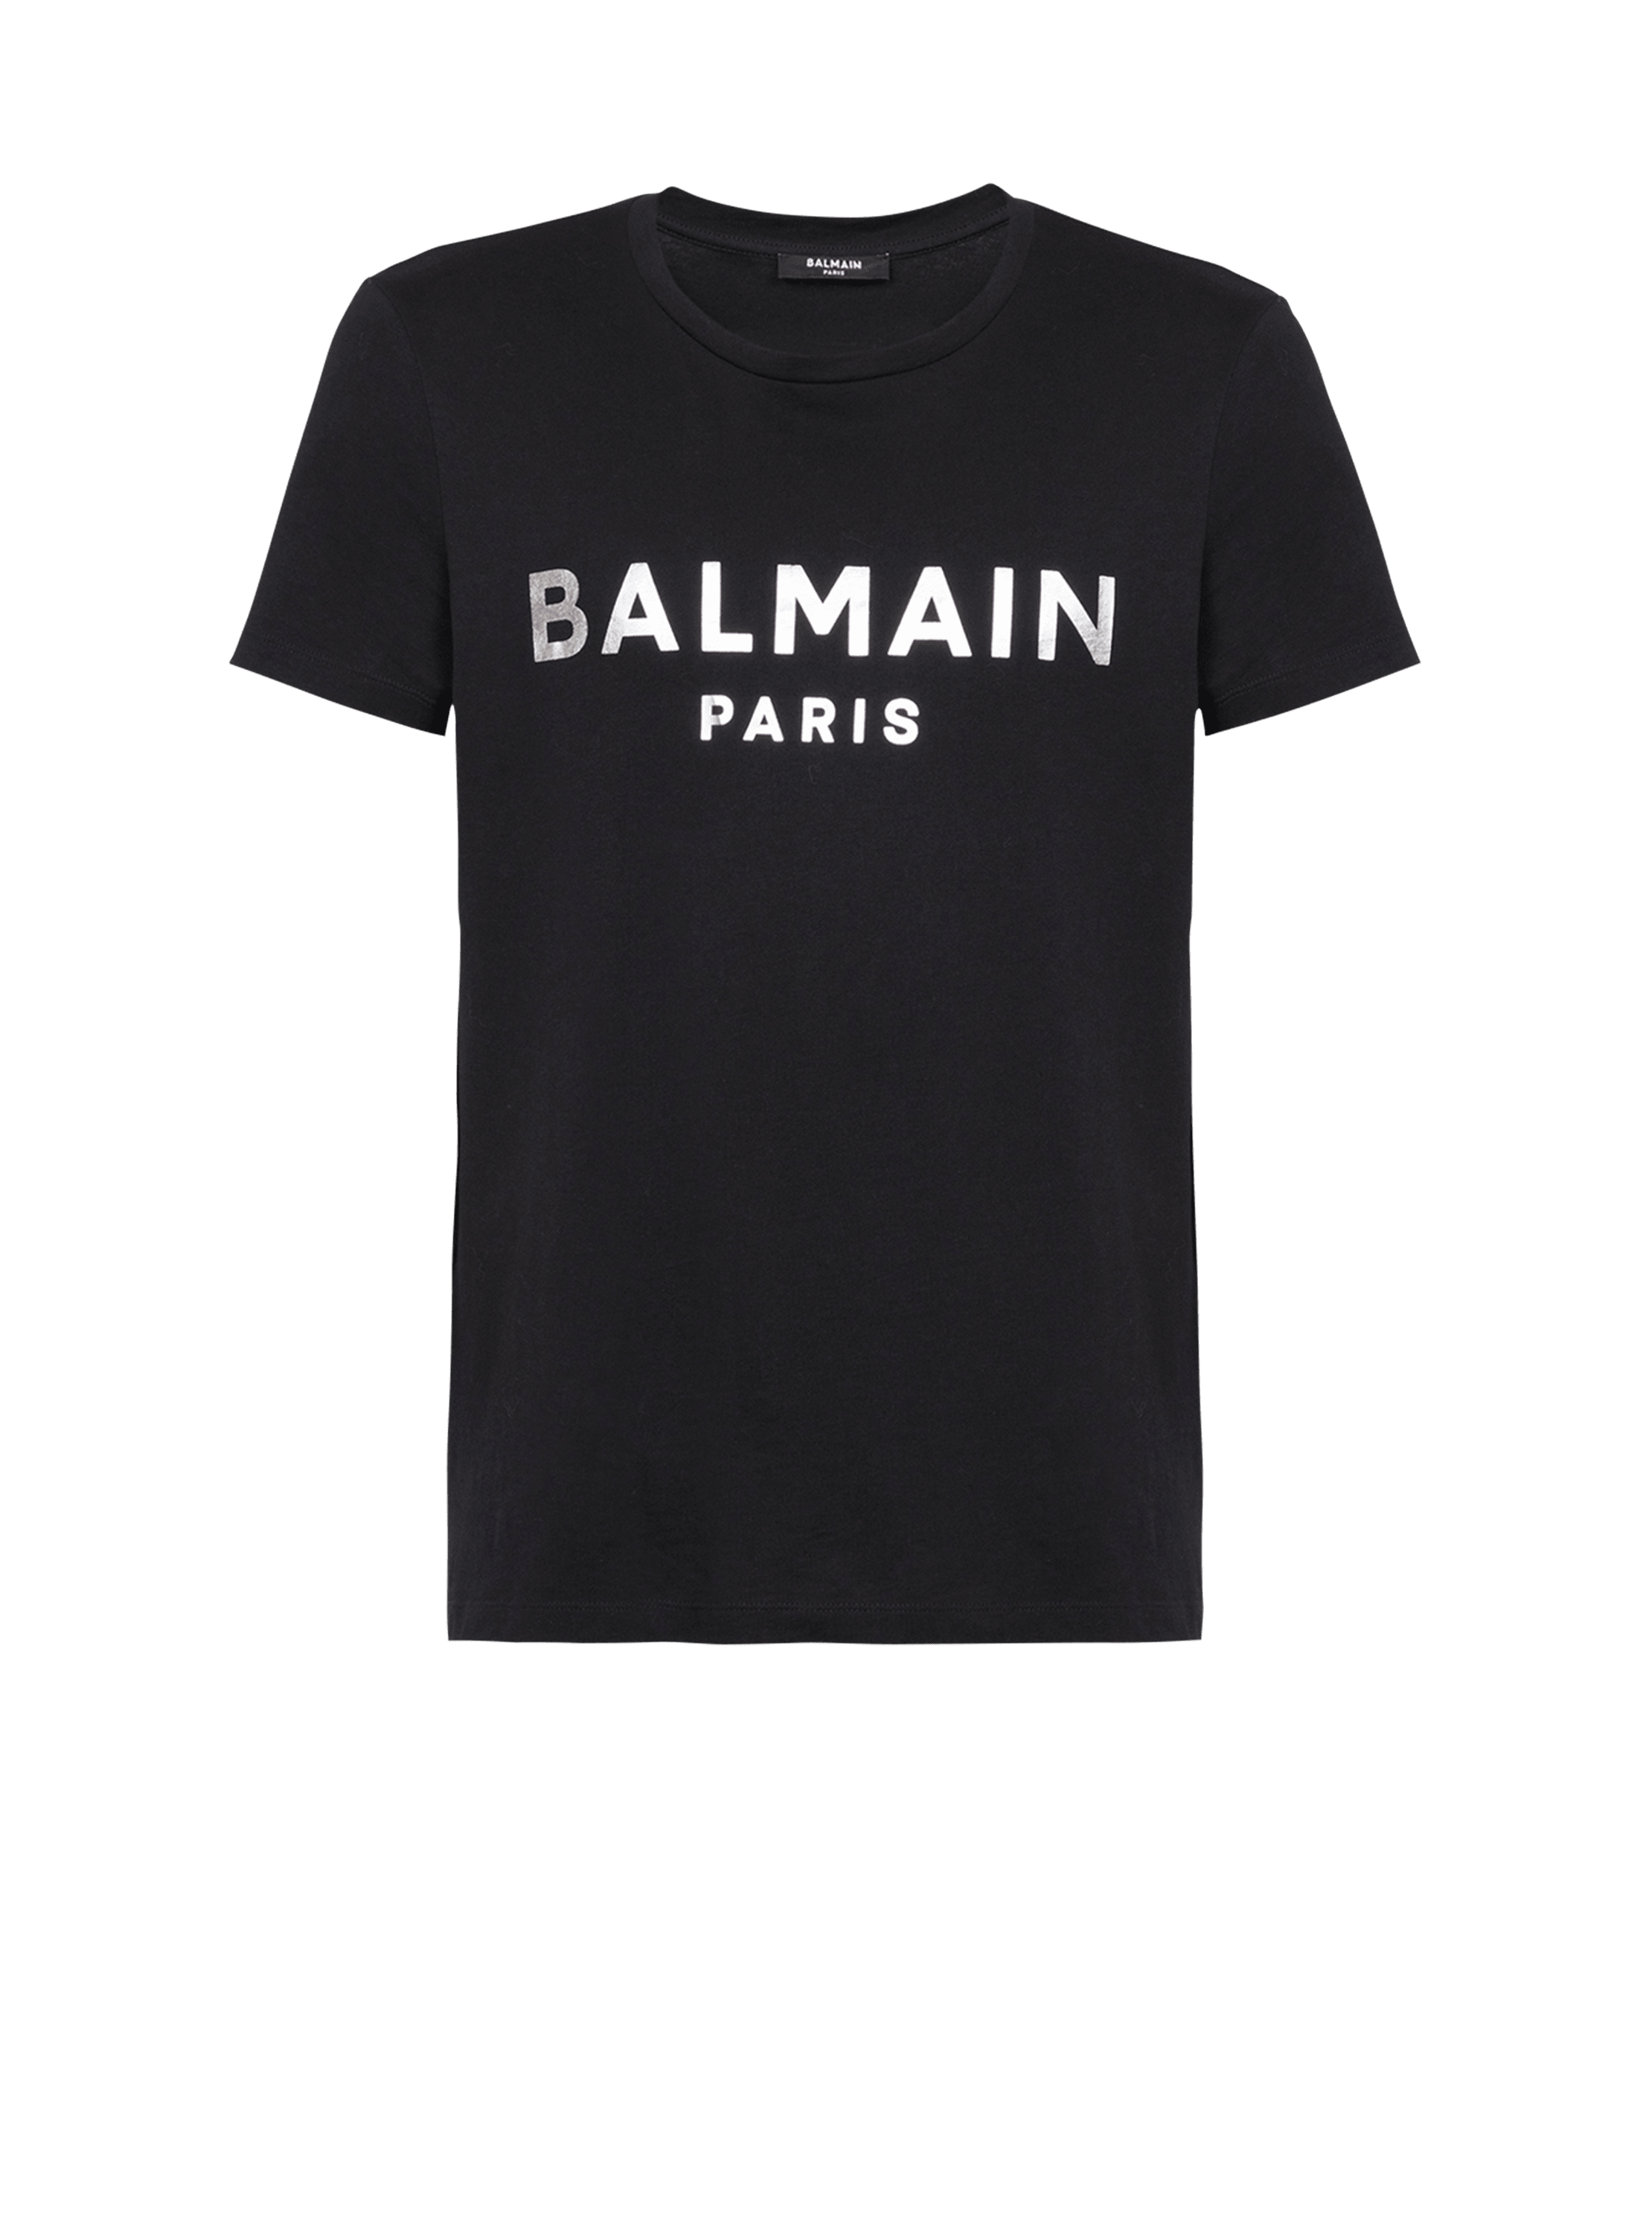 Camiseta de algodón con estampado del logotipo Balmain Paris